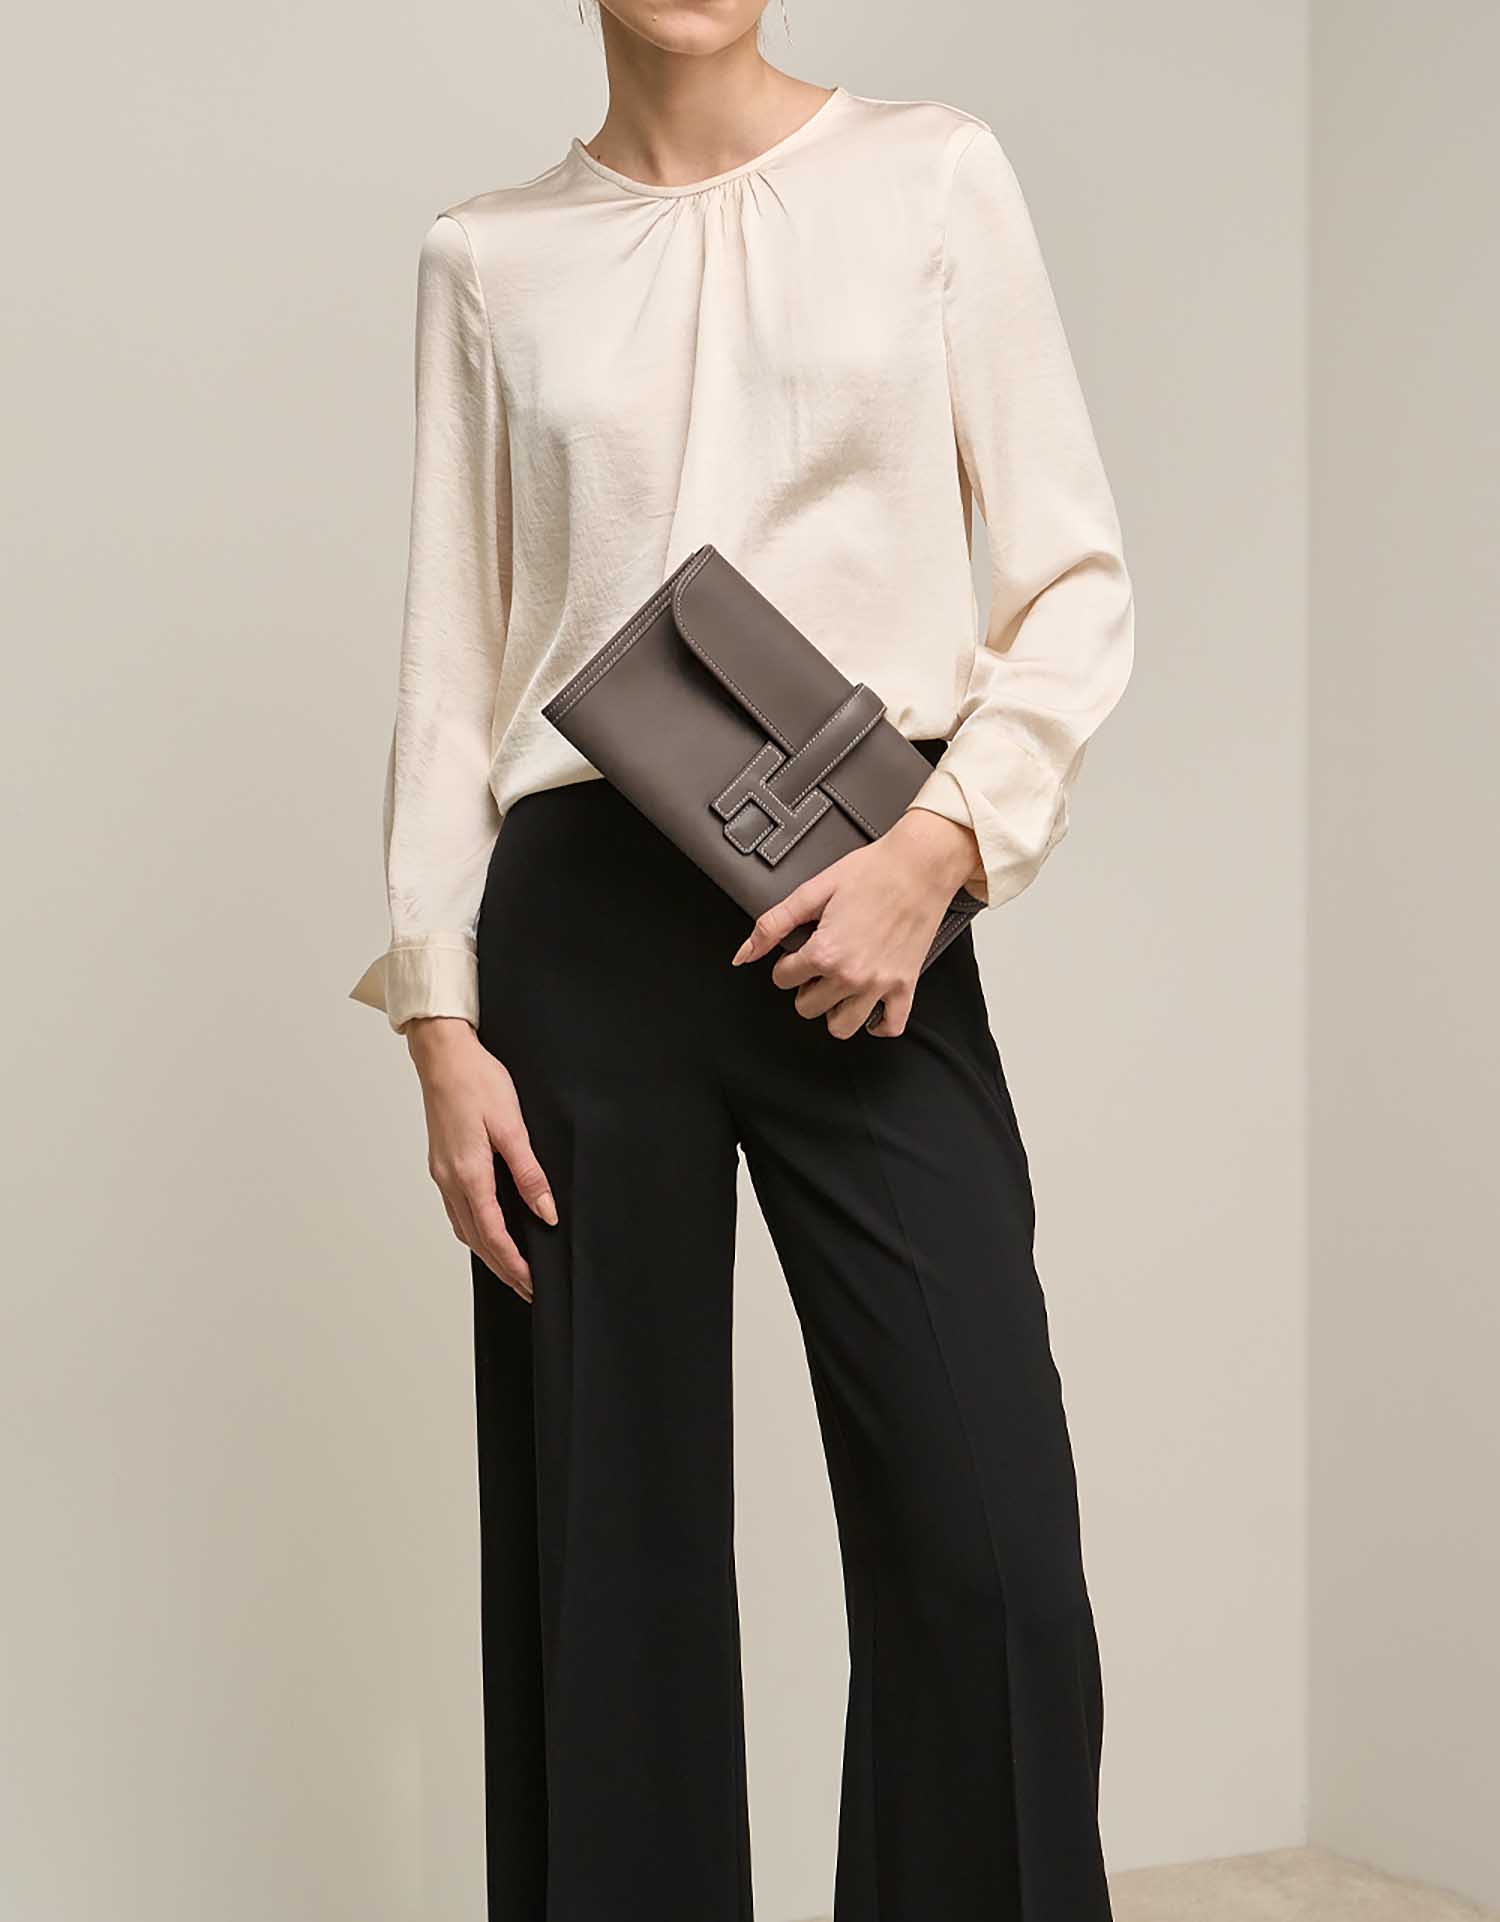 Hermès Jige 29 Etoupe on Model | Sell your designer bag on Saclab.com